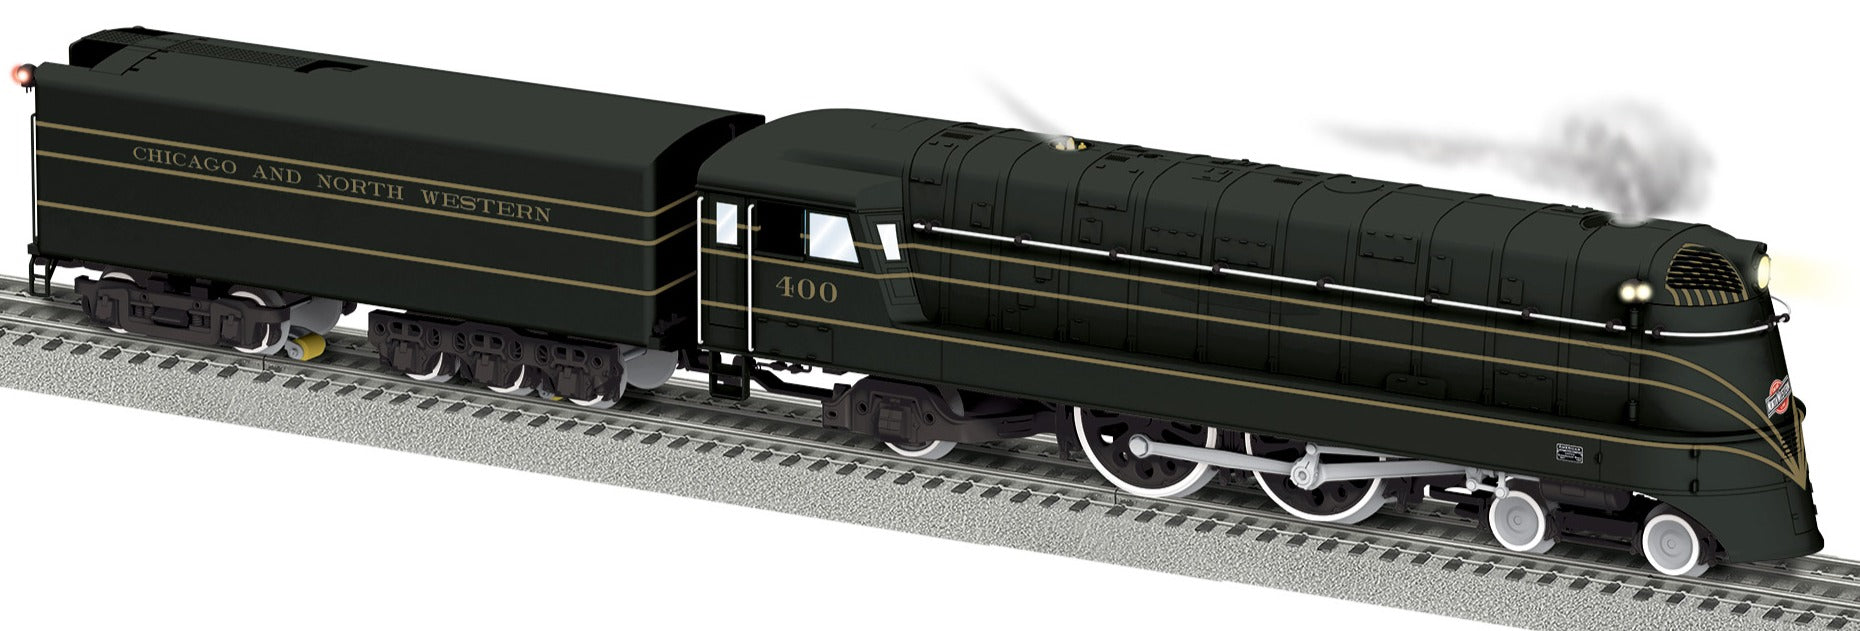 Lionel 2431730 - Legacy 4-4-2 Steam Locomotive "Chicago & North Western" #400